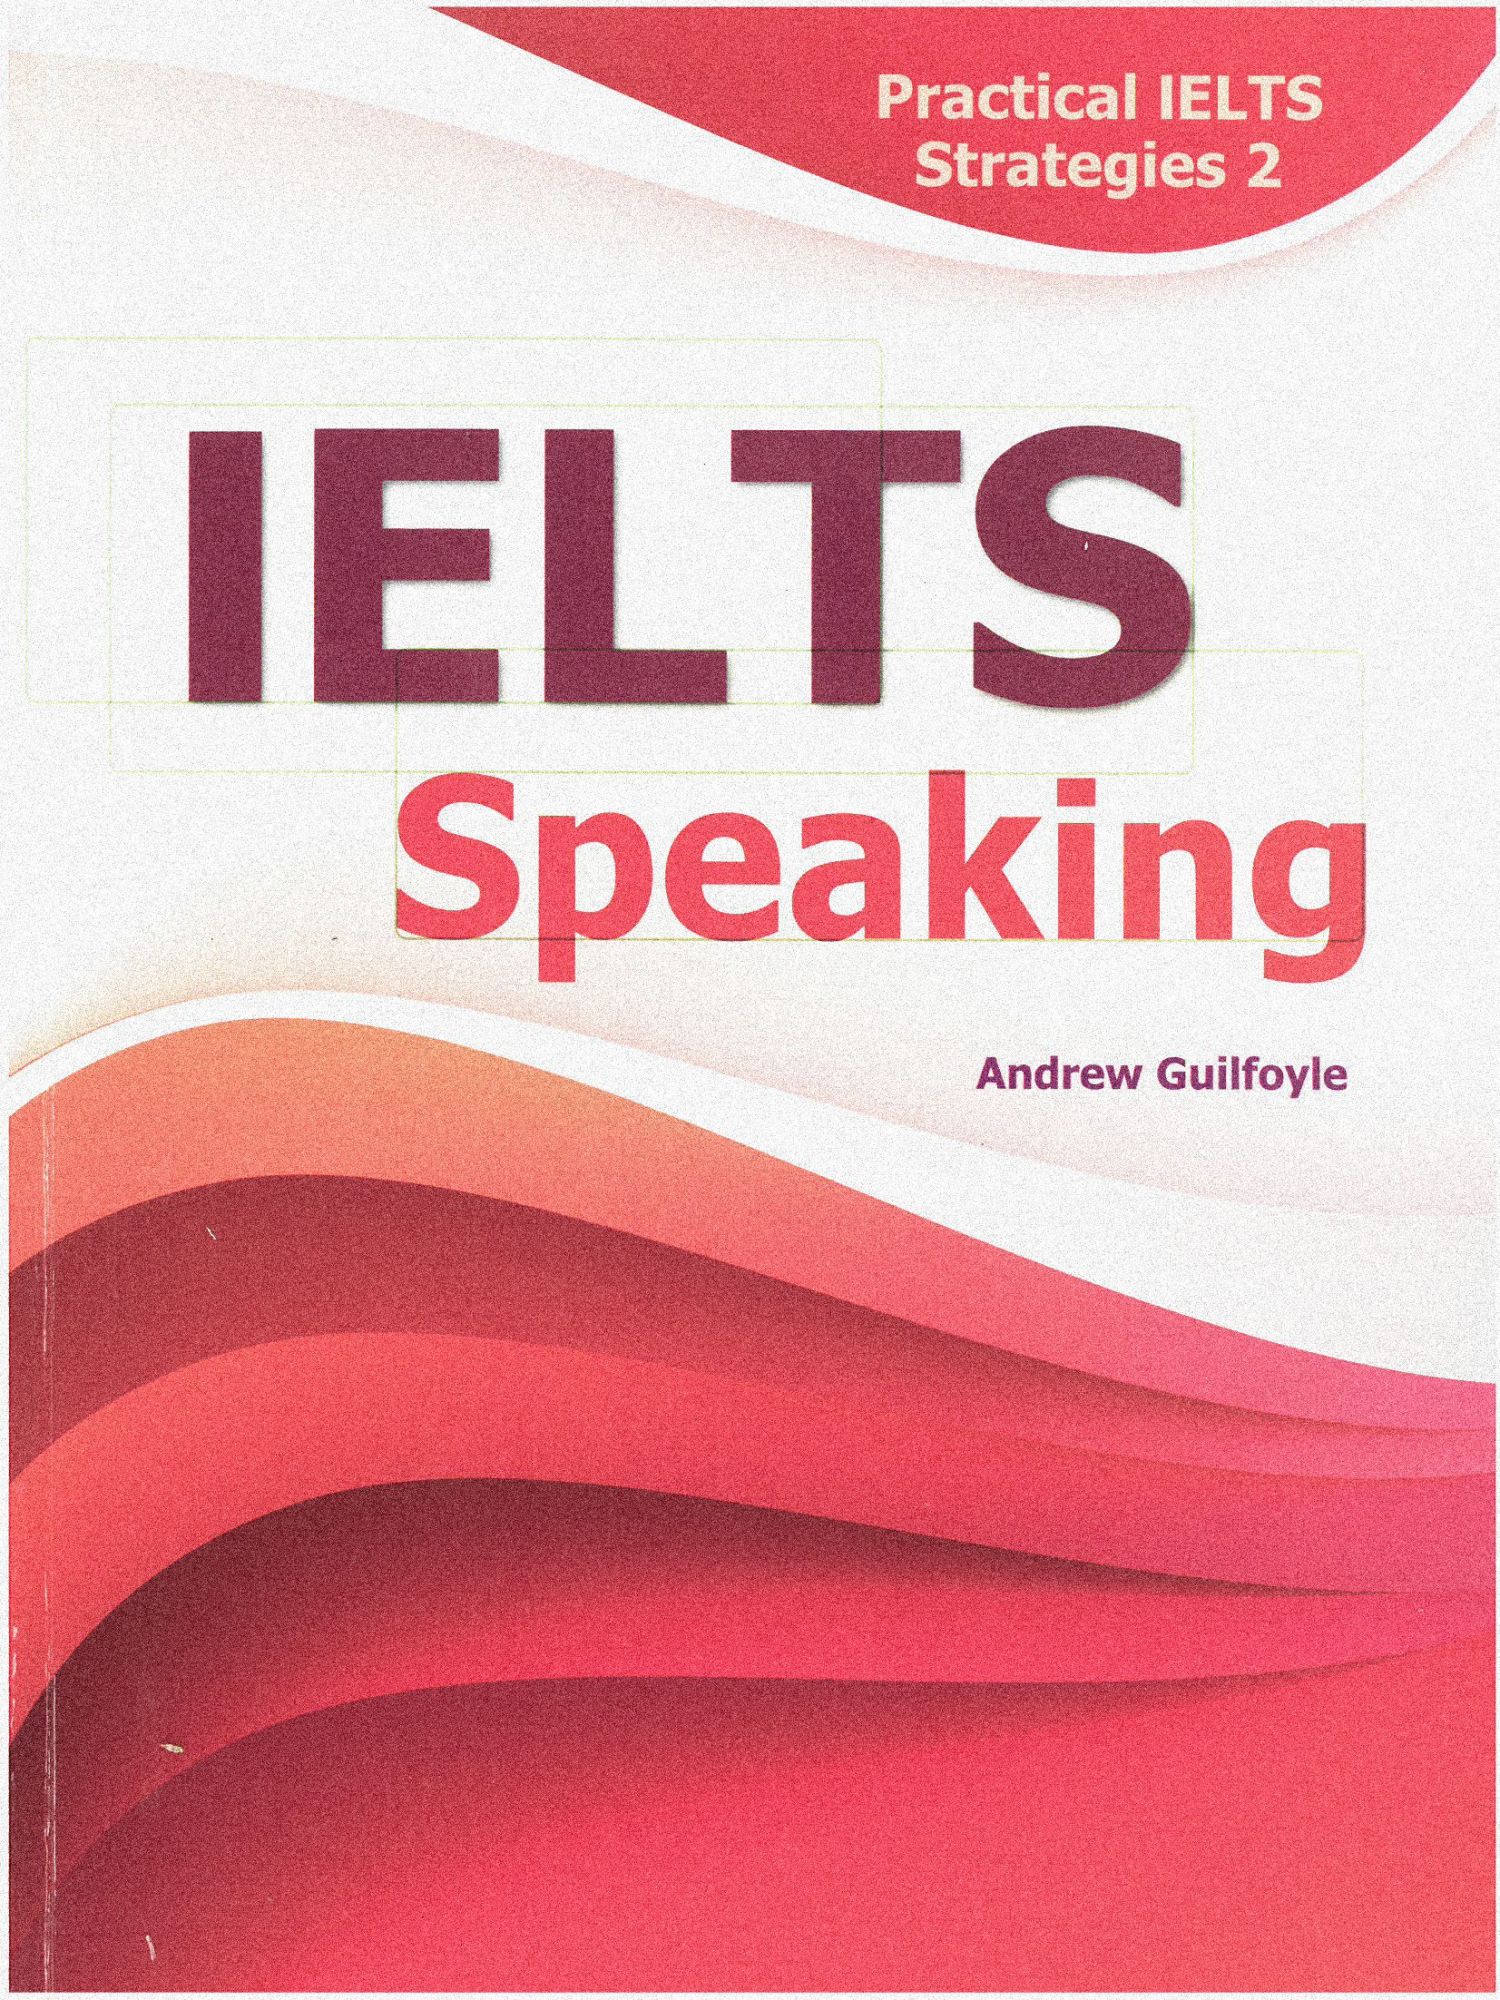 Ielts speaking practice. IELTS. Speaking for IELTS. IELTS Strategies.